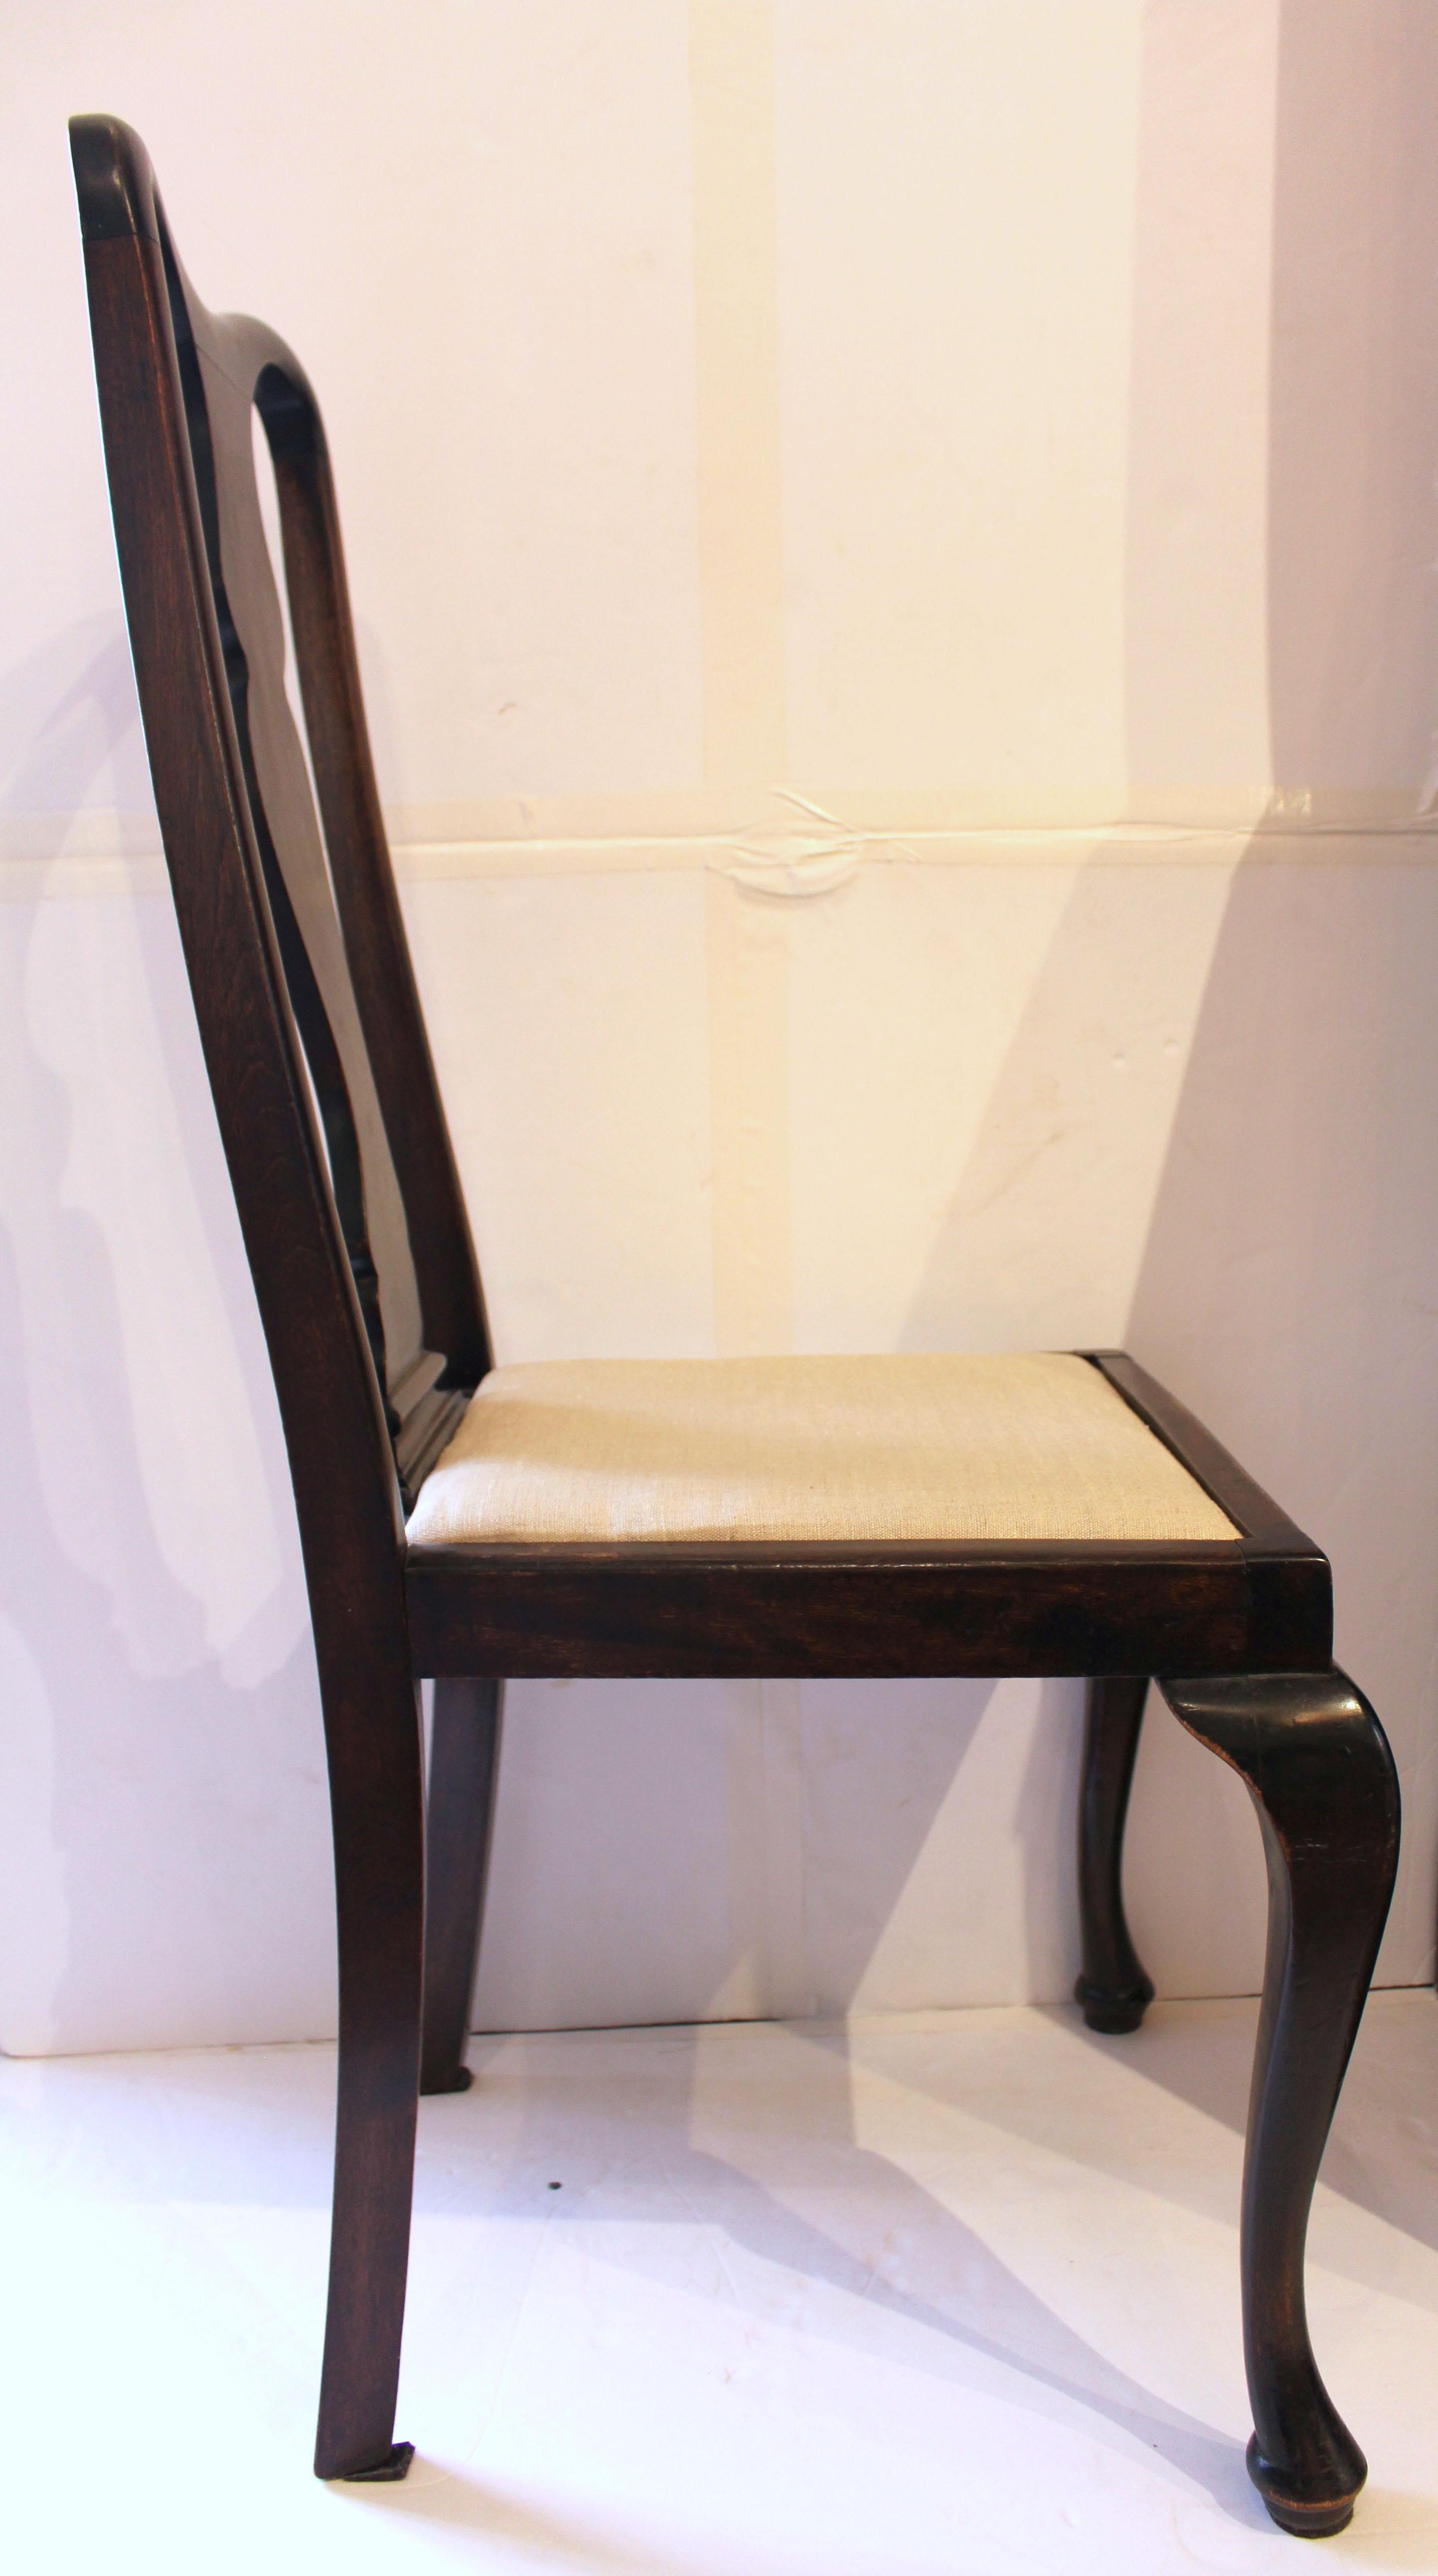 Chaise d'appoint de style Queen Anne de la fin du XIXe siècle, anglaise. Échelle diminutive. Pieds cabriole simples se terminant par des pieds pad. Siège encastré. Barre d'appui en forme de crête et dosseret typique du style Queen Anne.
20